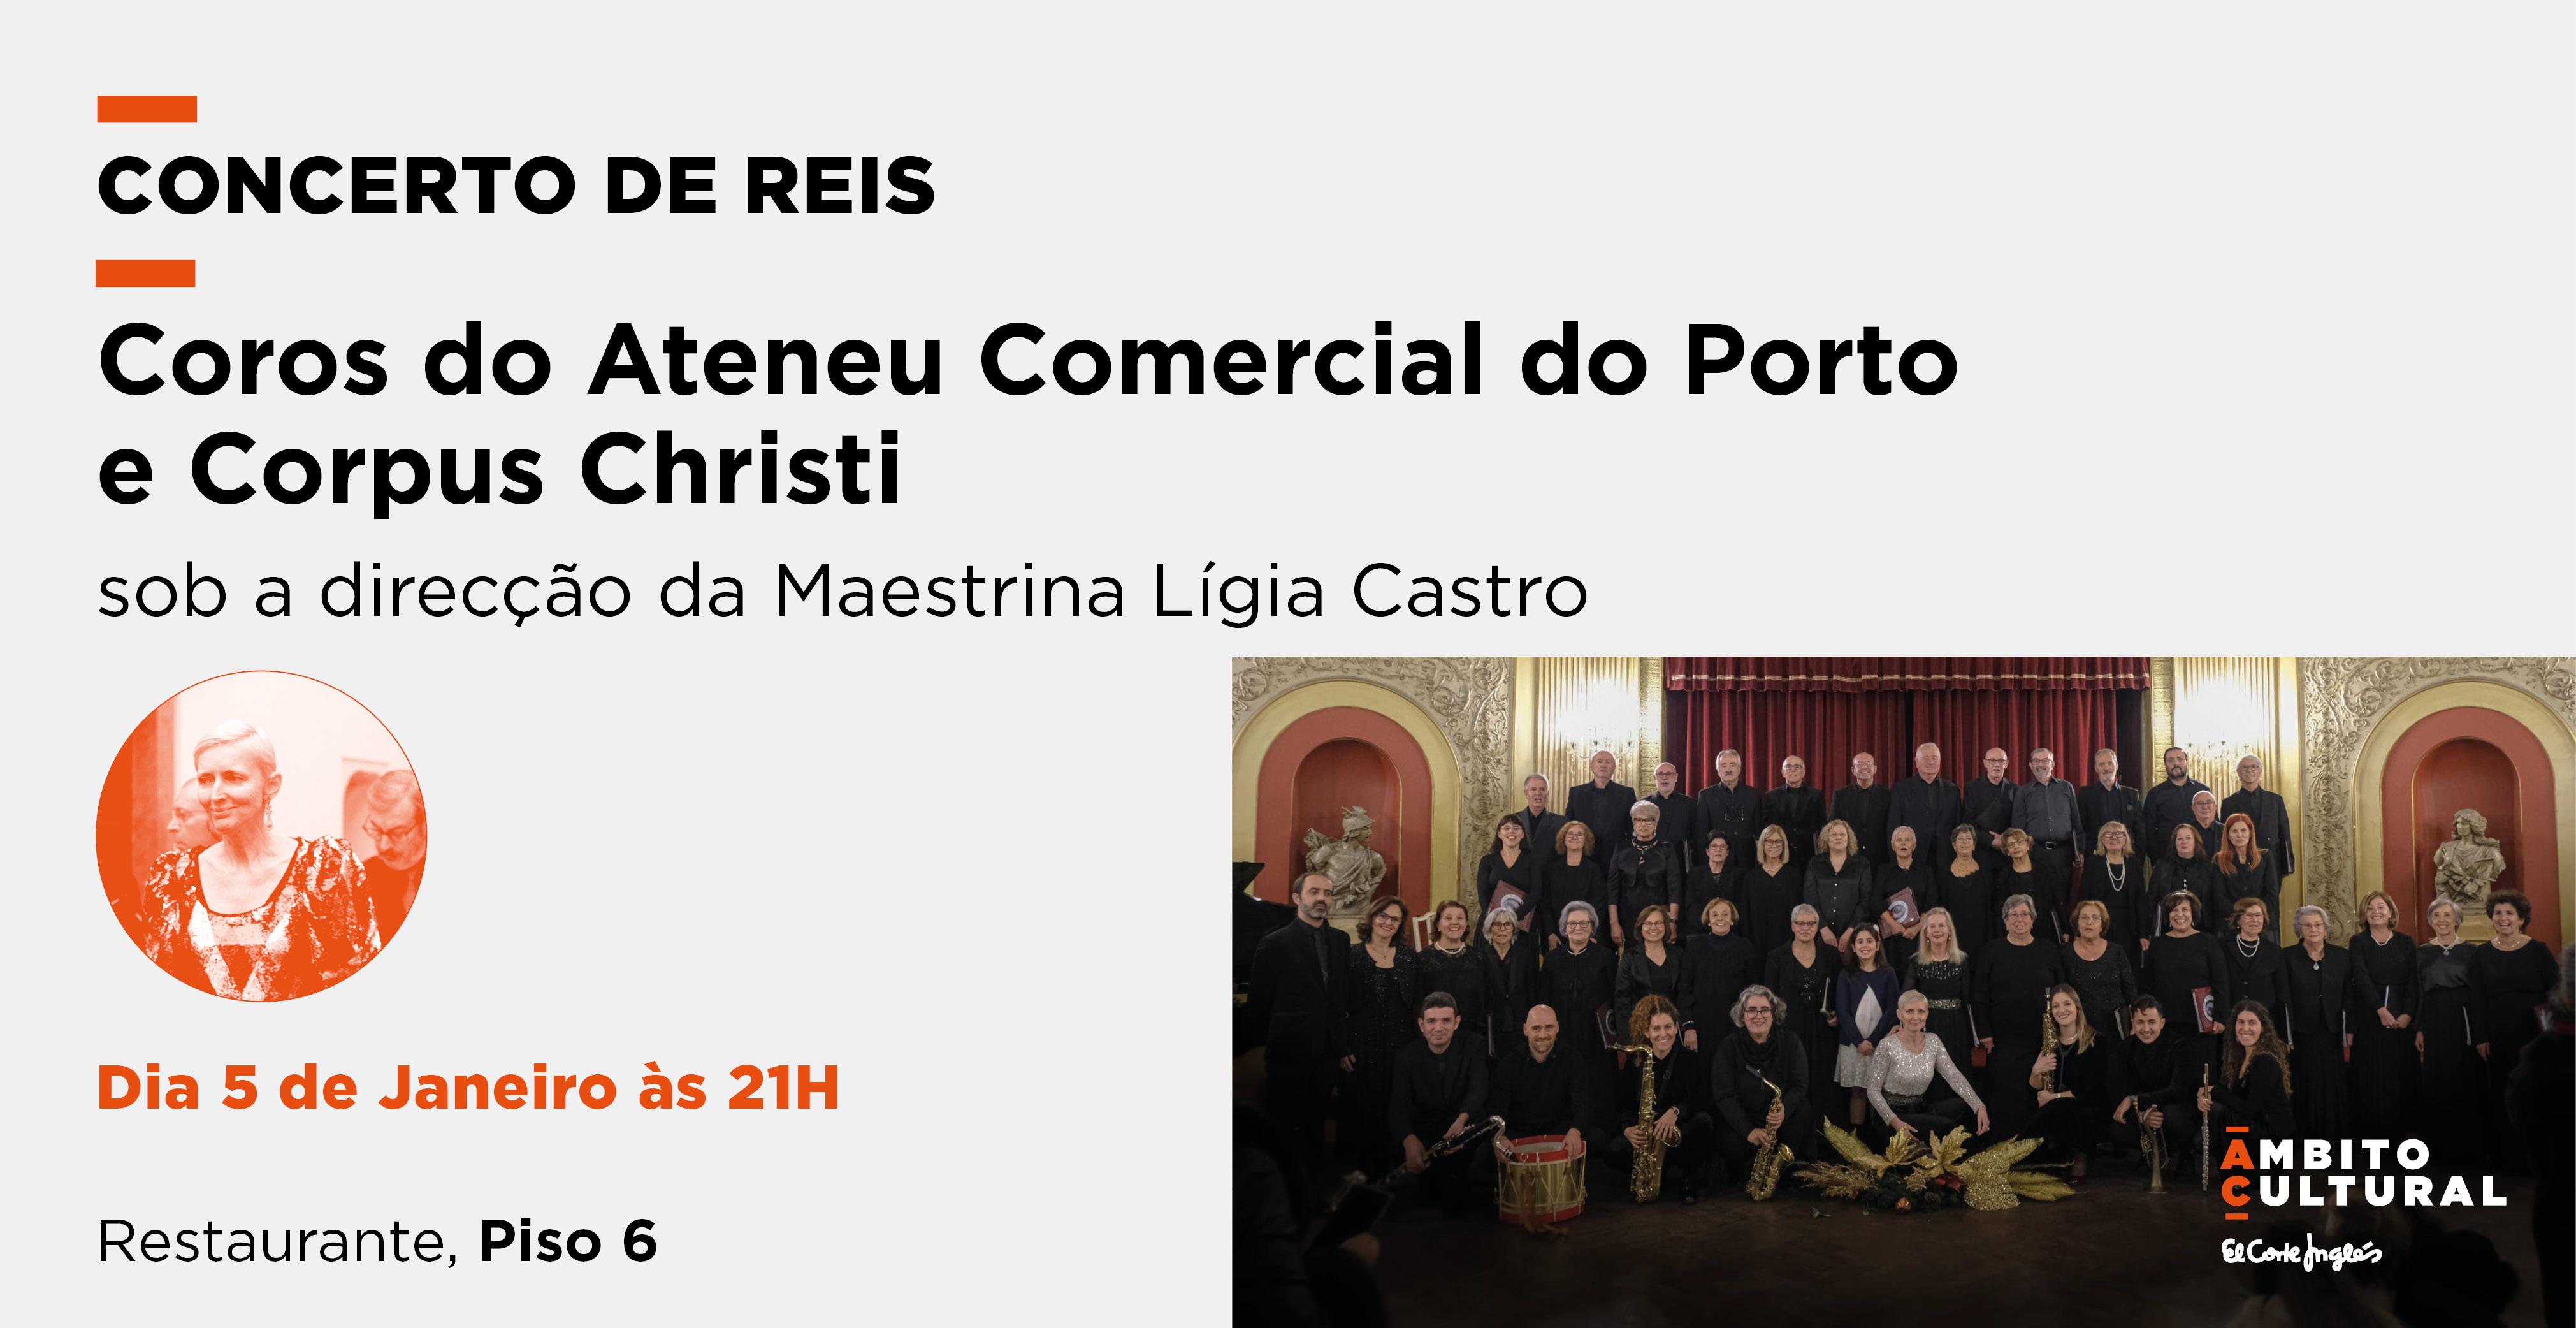 Imagen del evento CONCERTO DE REIS COM O COROS DO ATENEU COMERCIAL DO PORTO E CORPUS CHRISTI